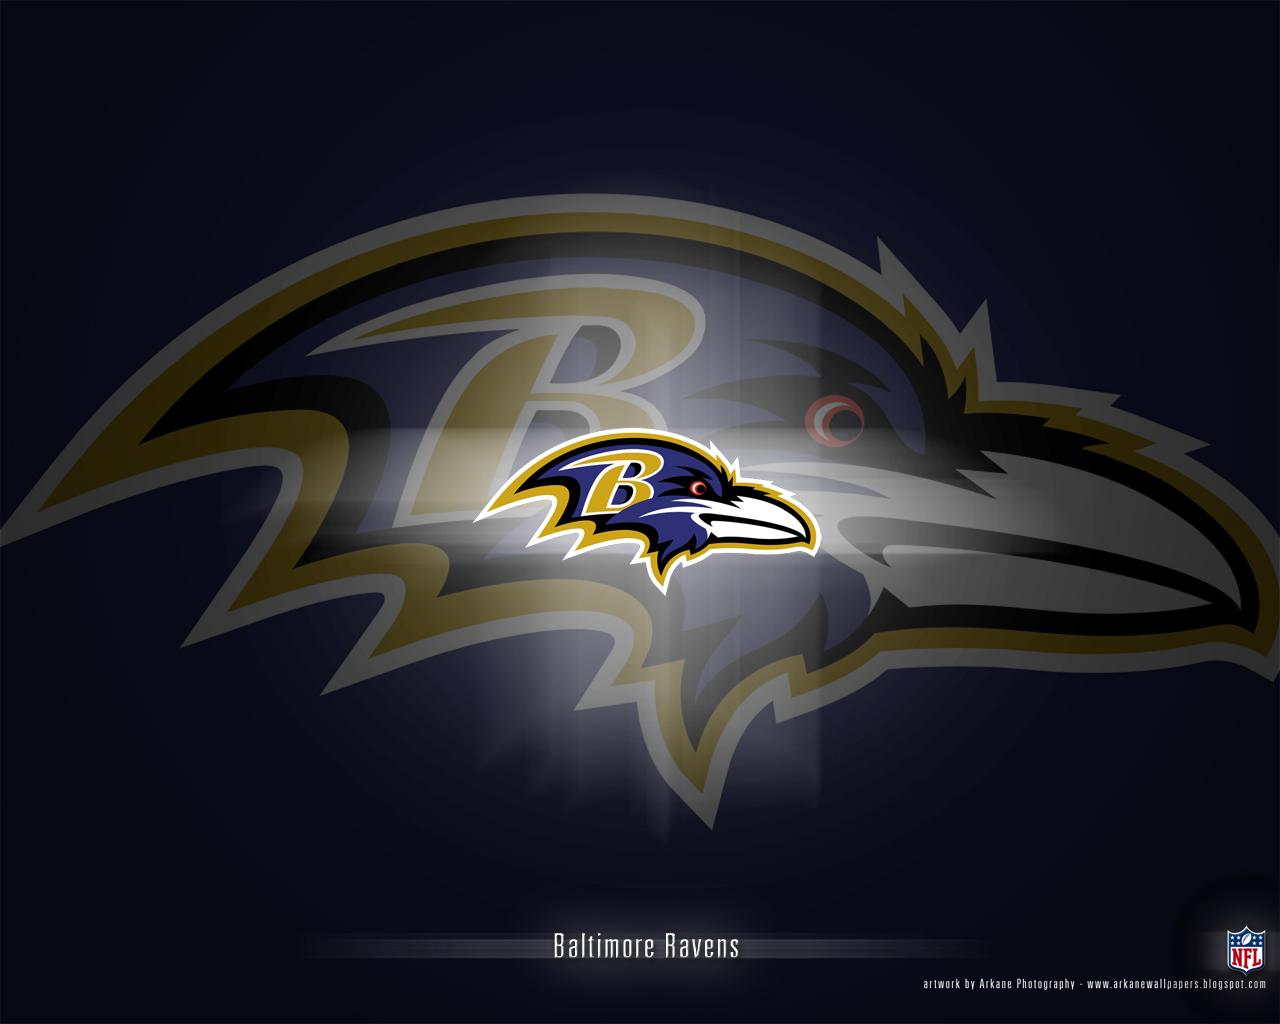 Baltimore Ravens wallpaper HD images Baltimore Ravens wallpapers 1280x1024